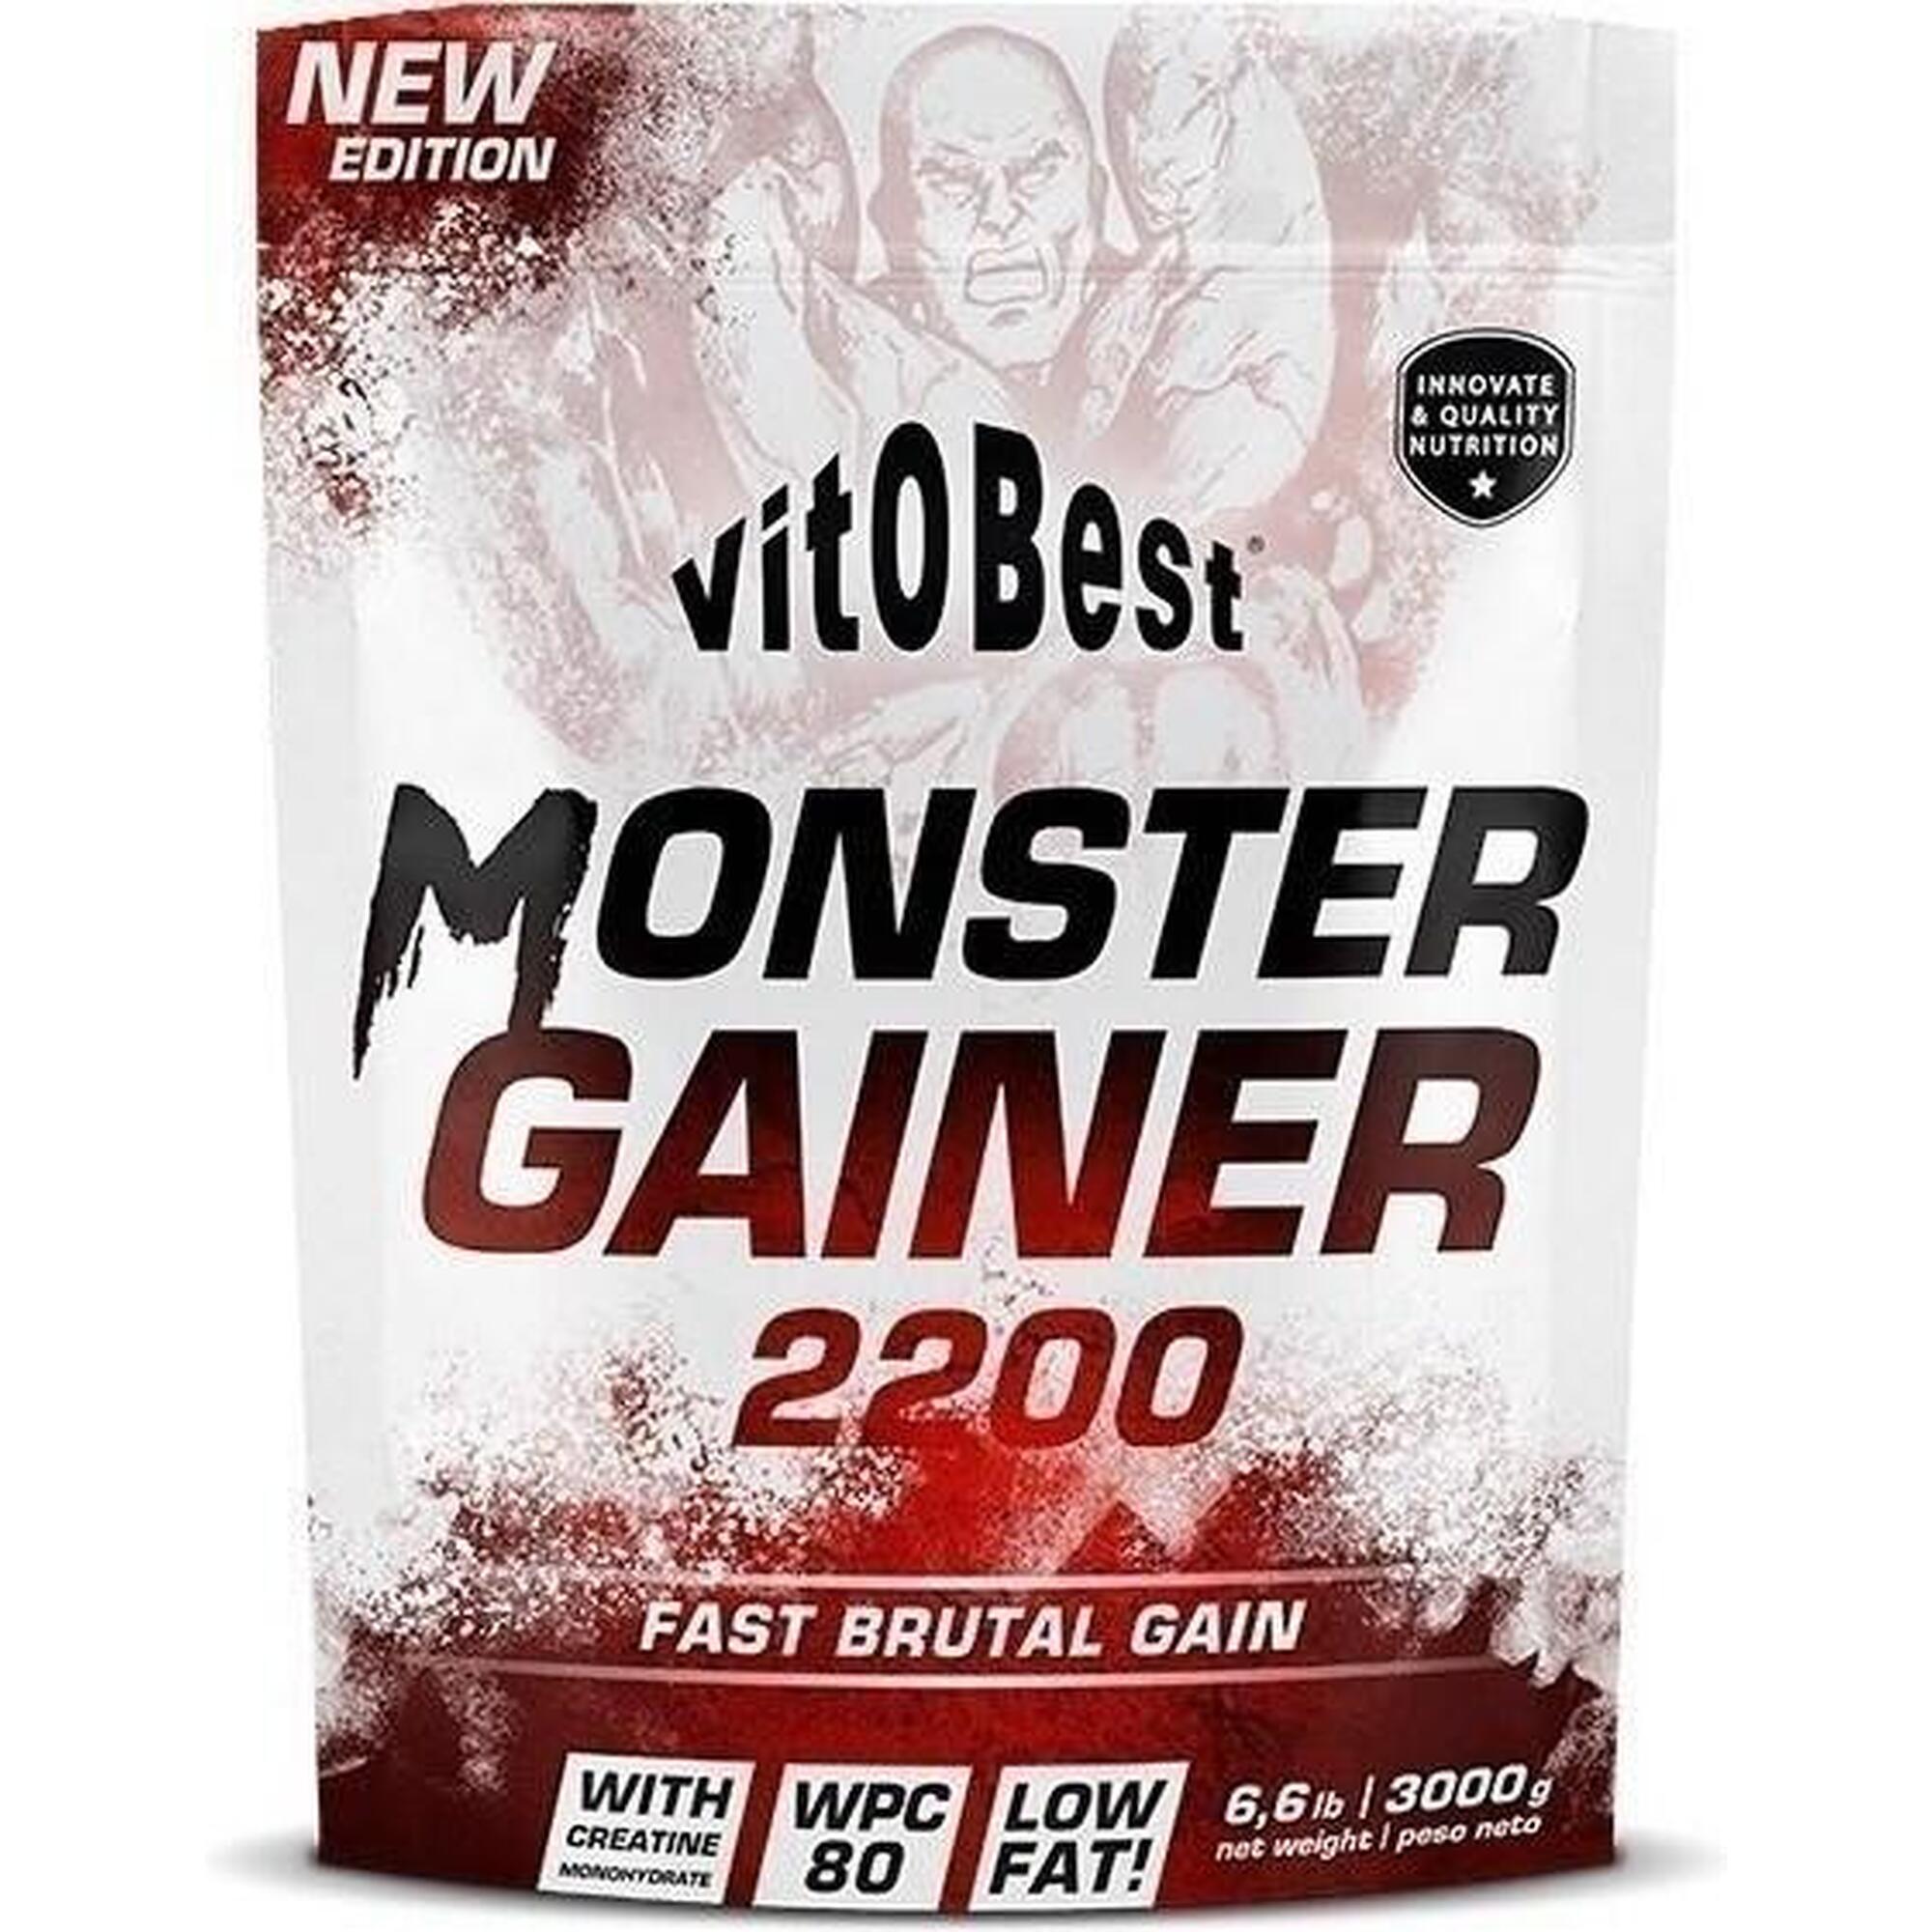 Monster Gainer 2200 - 7kg Vainilla de VitoBest